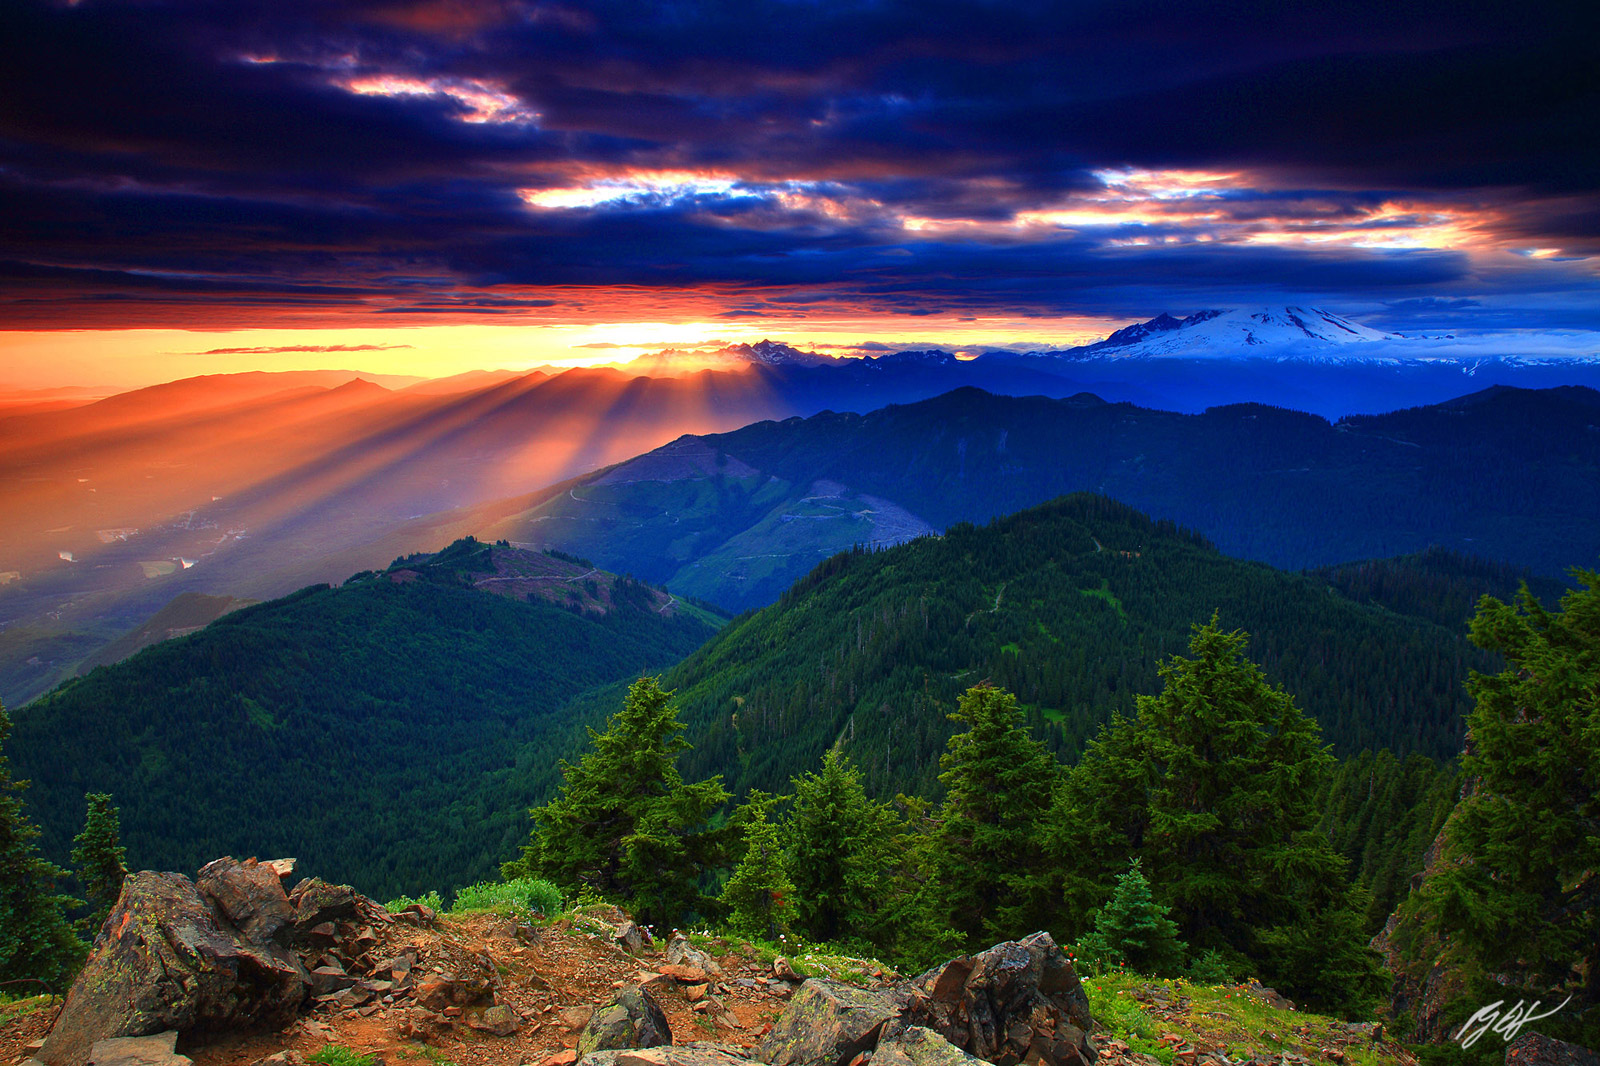 Sunset Light Rays with Mt Baker from Sauk Mountain Summit in Washington